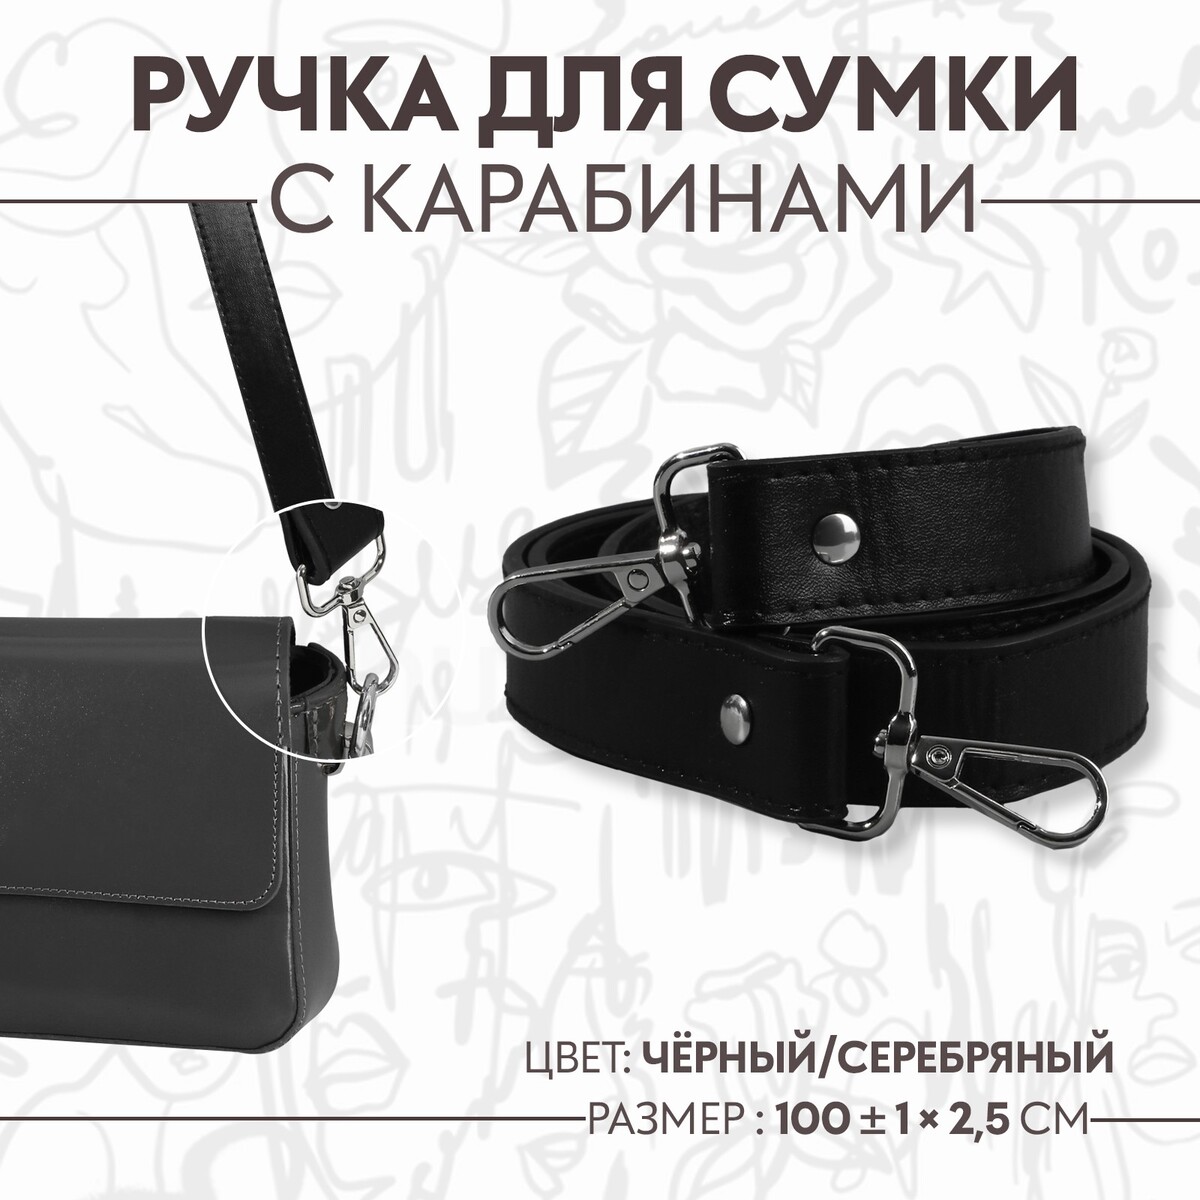 Ручка для сумки, с карабинами, 100 ± 1 см × 2,5 см, цвет черный